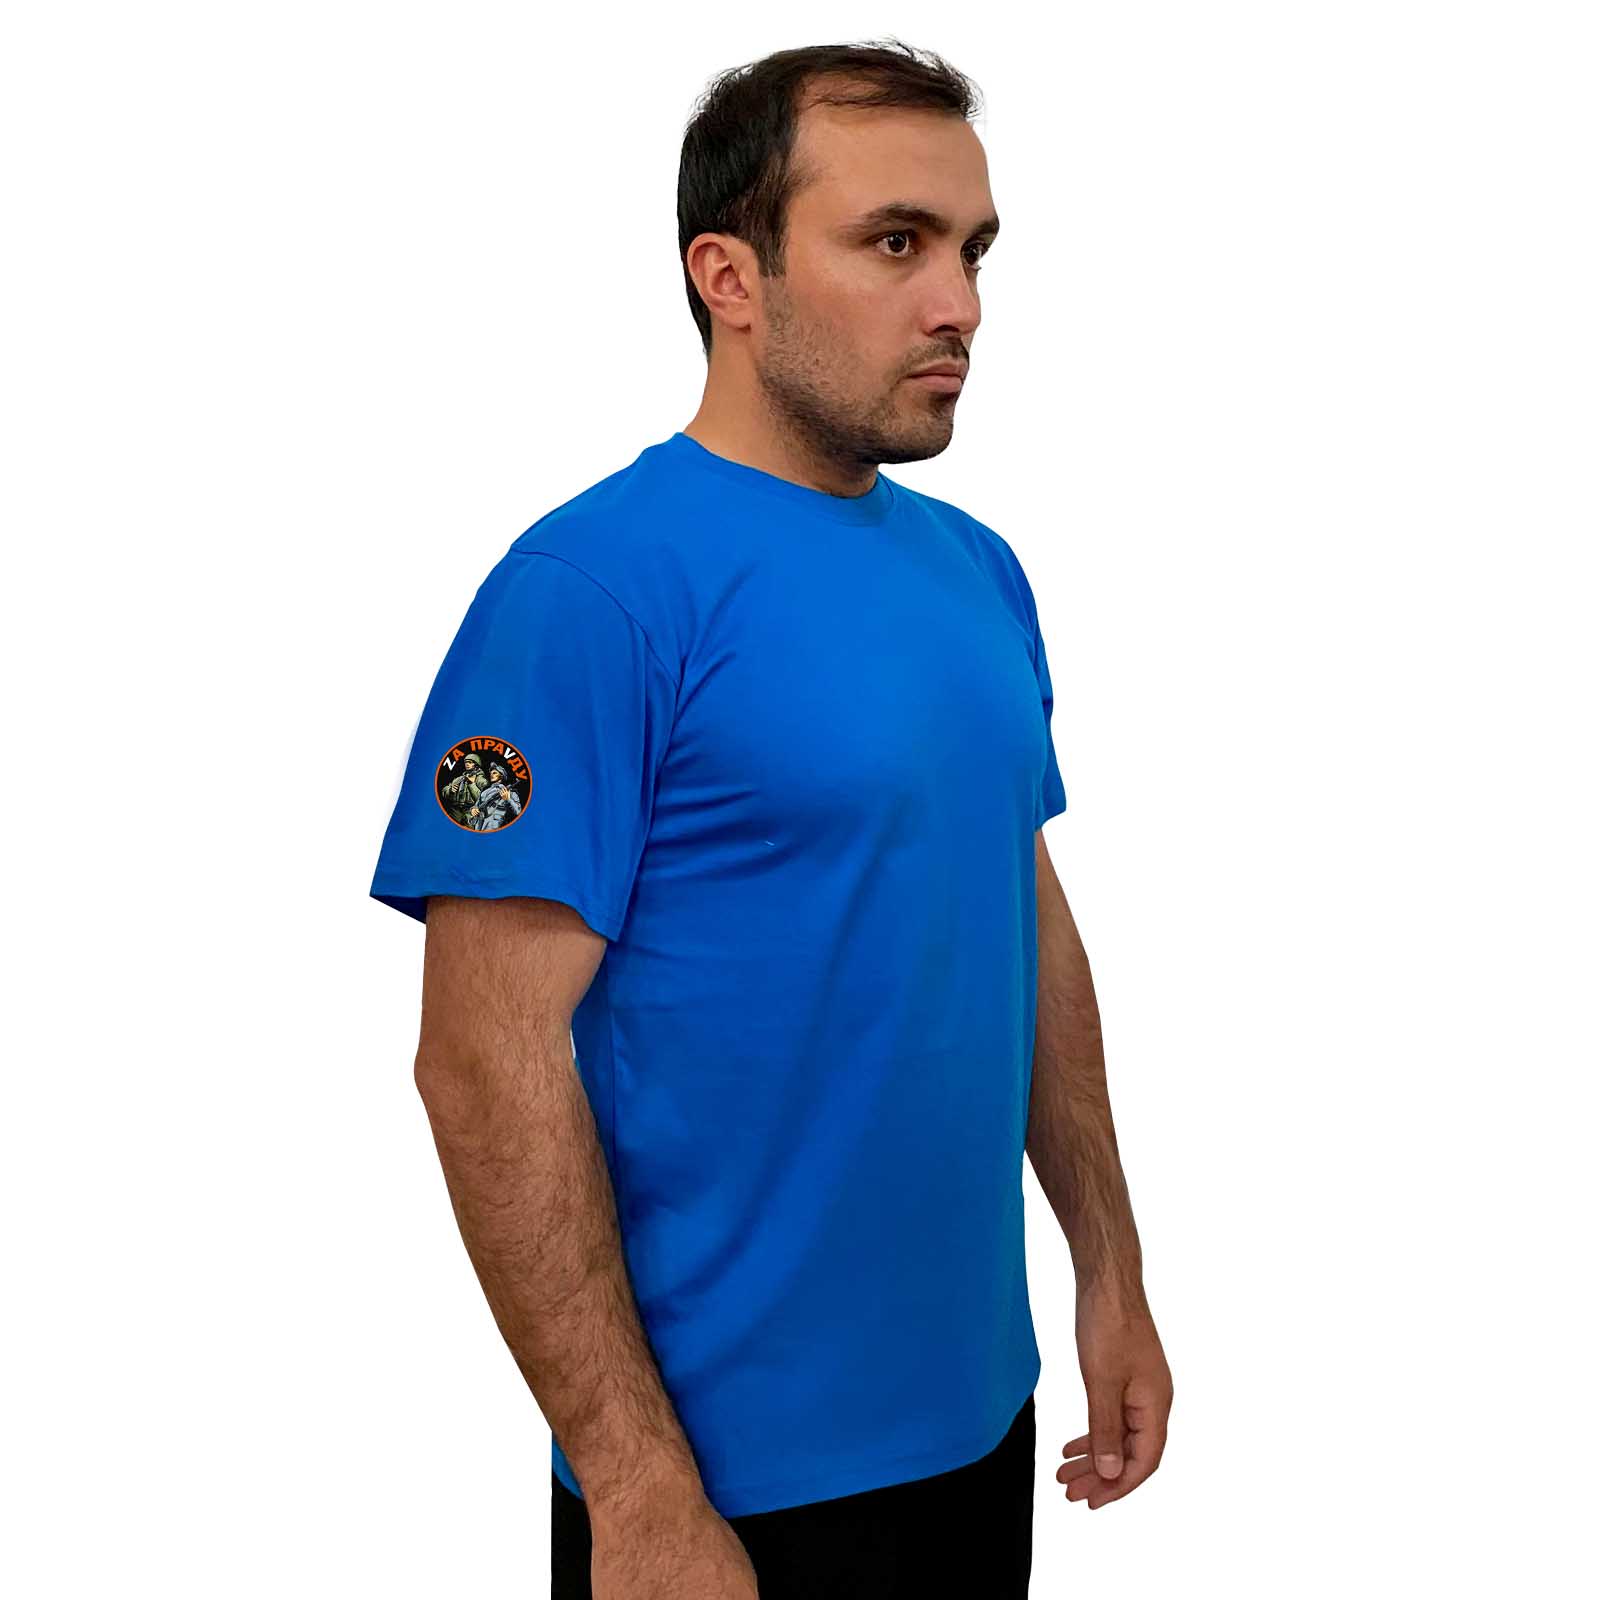 Купить строгую голубую футболку Zа ПраVду с доставкой в ваш город